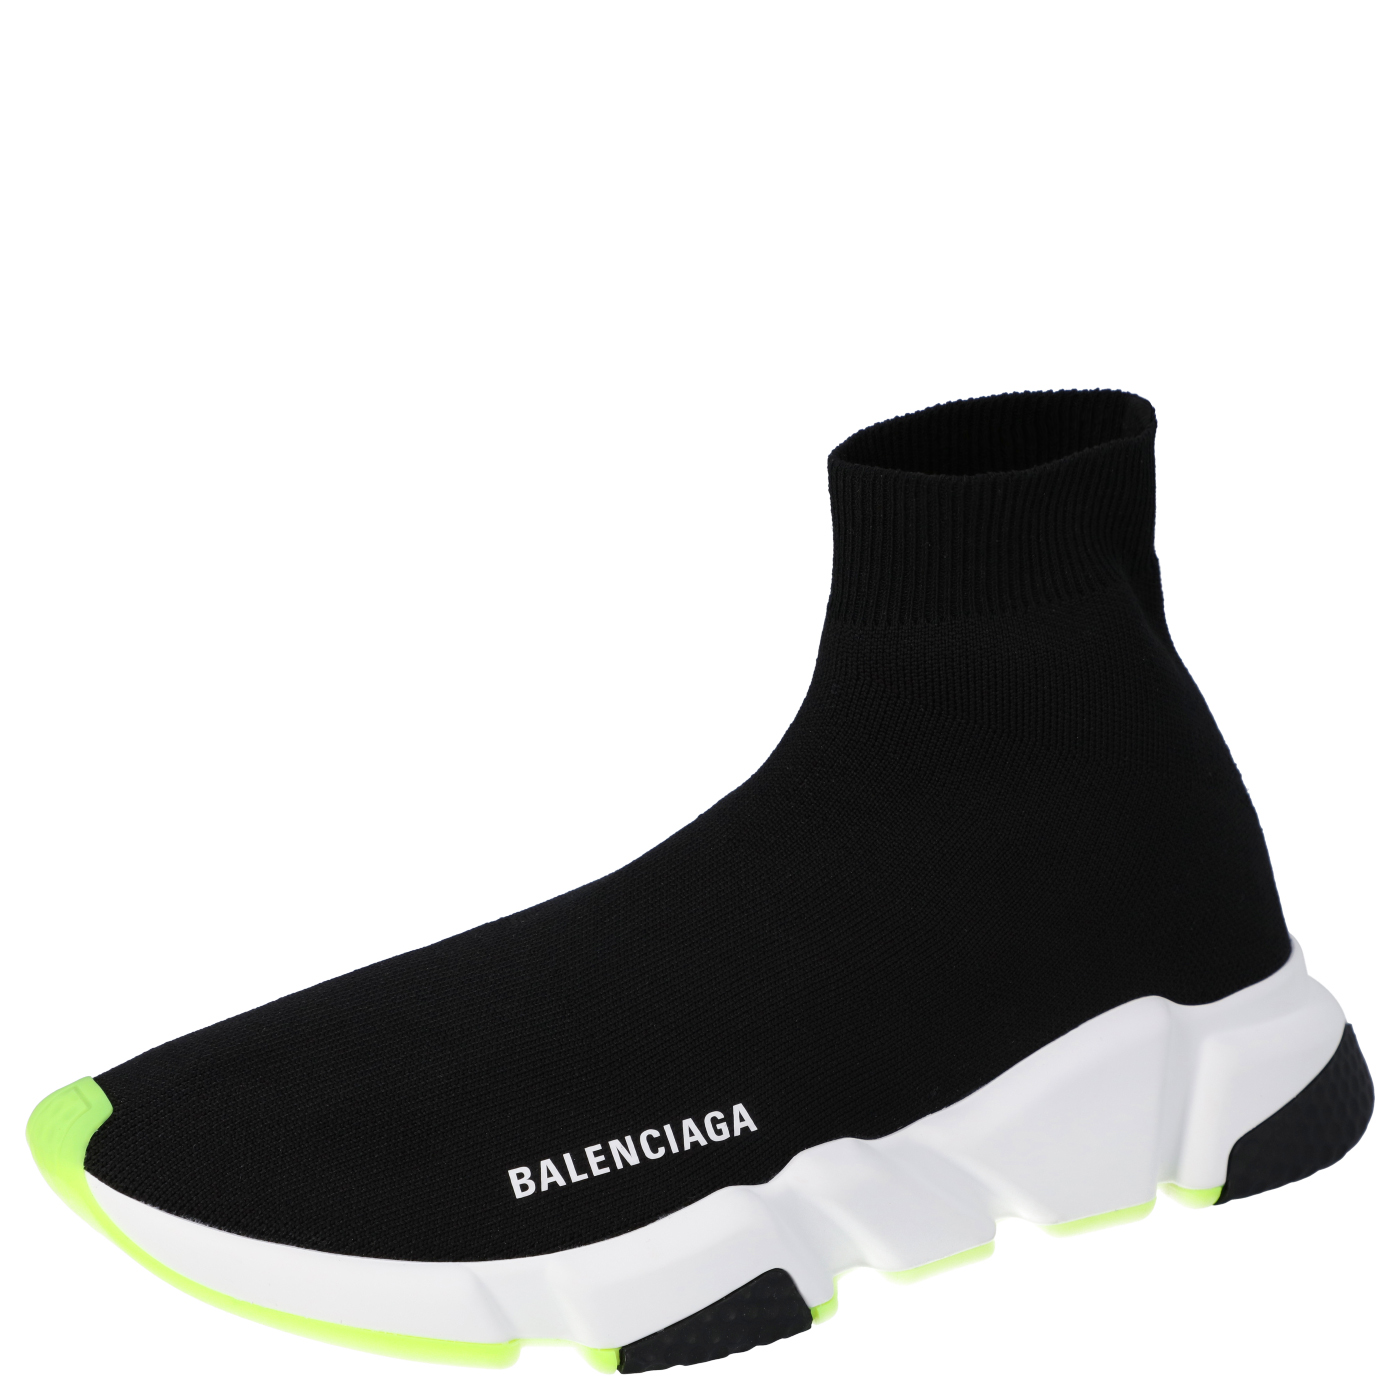 Balenciaga Black/Neon Green Knit Speed High Top Sneakers Size EU 42